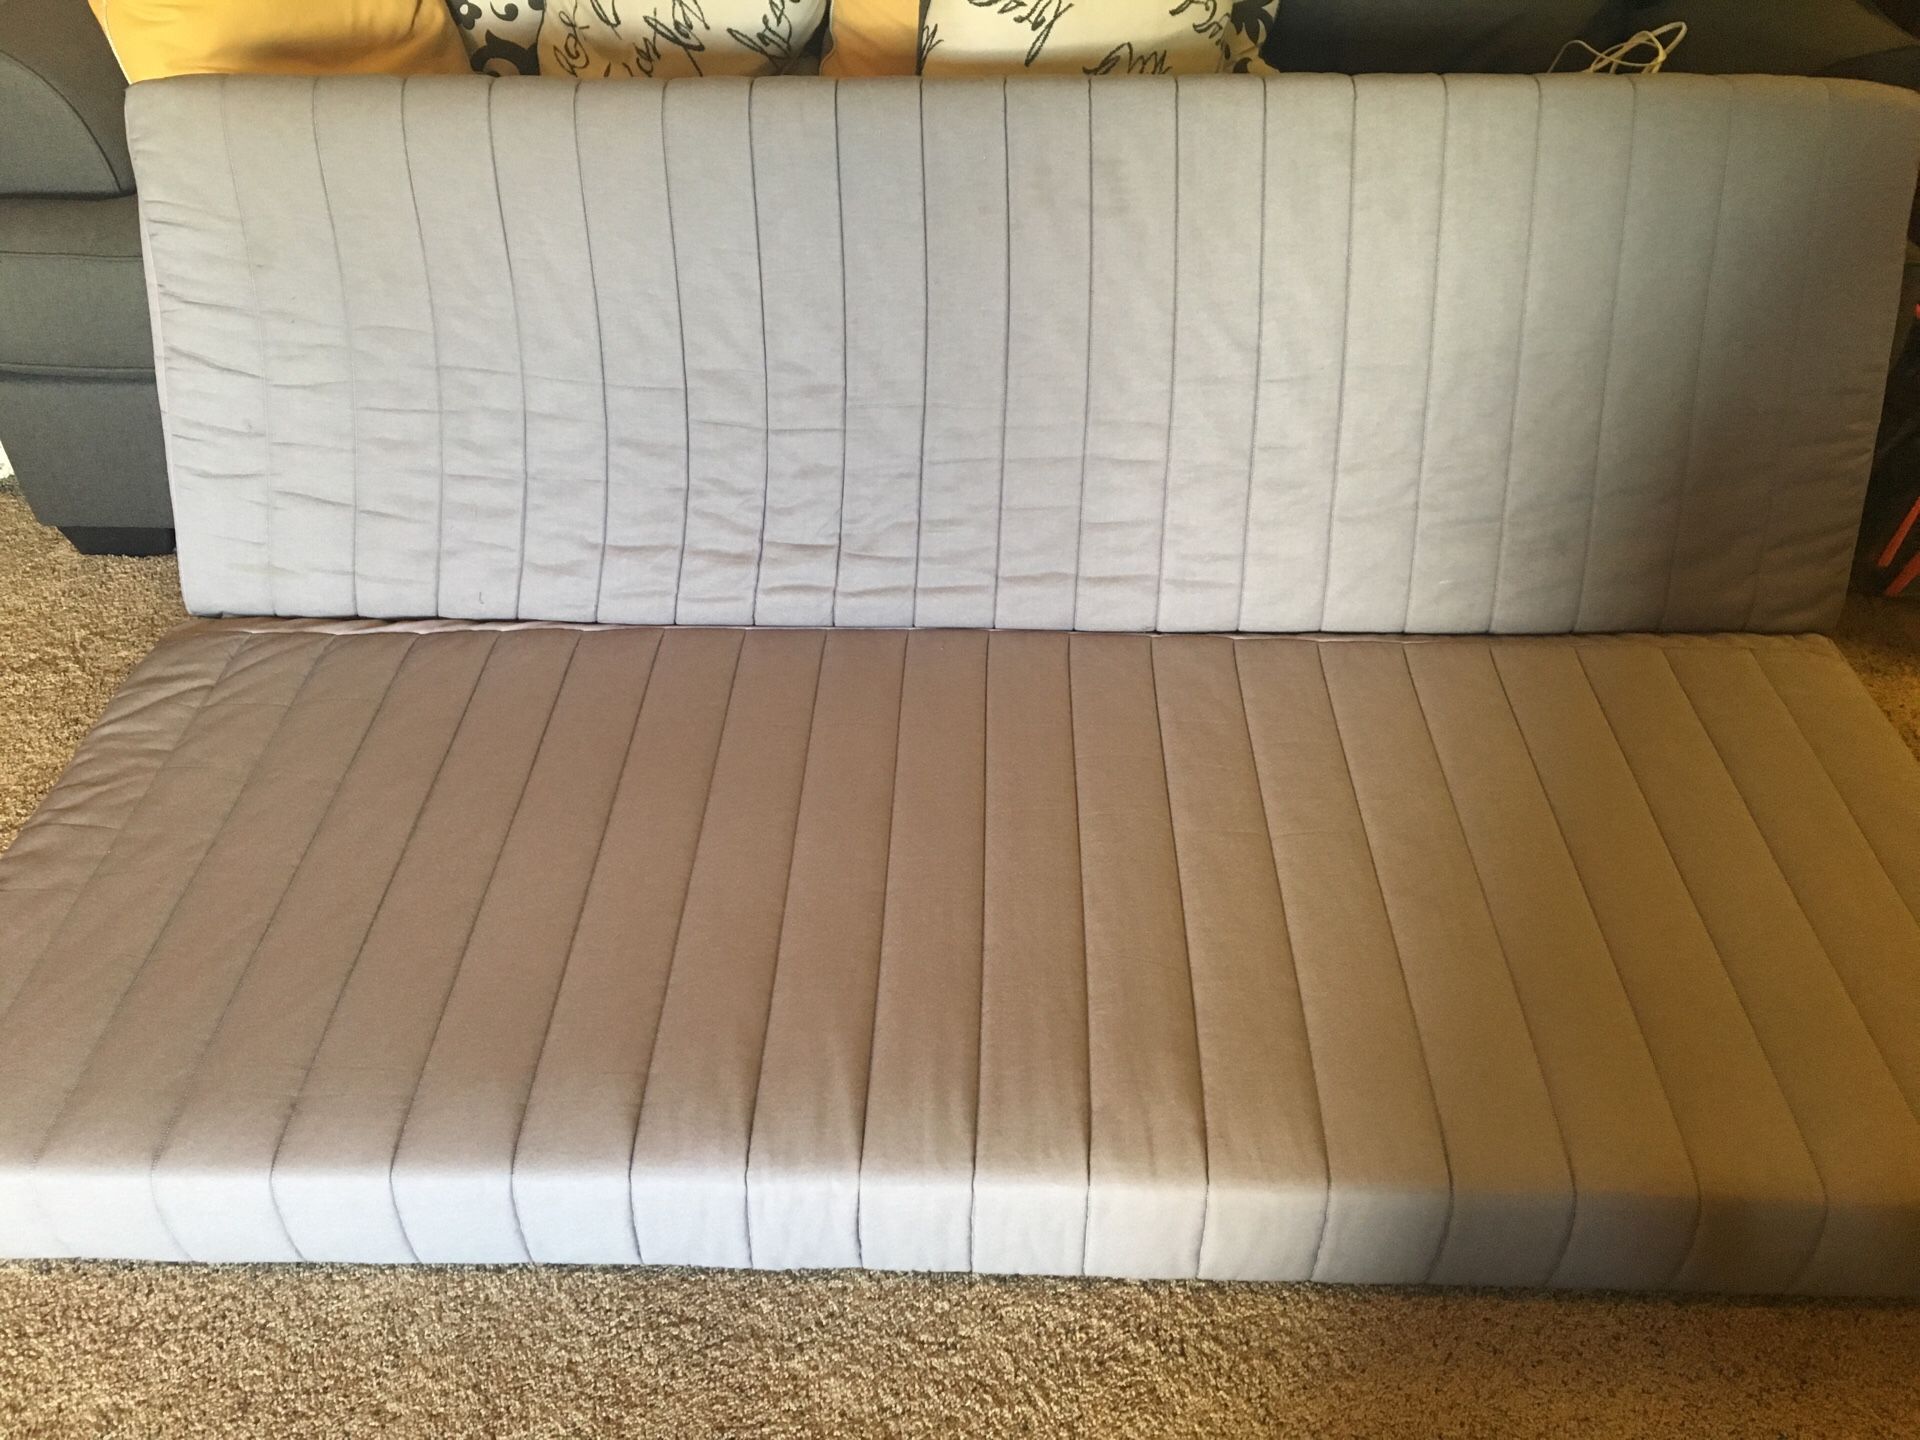 Grey futon